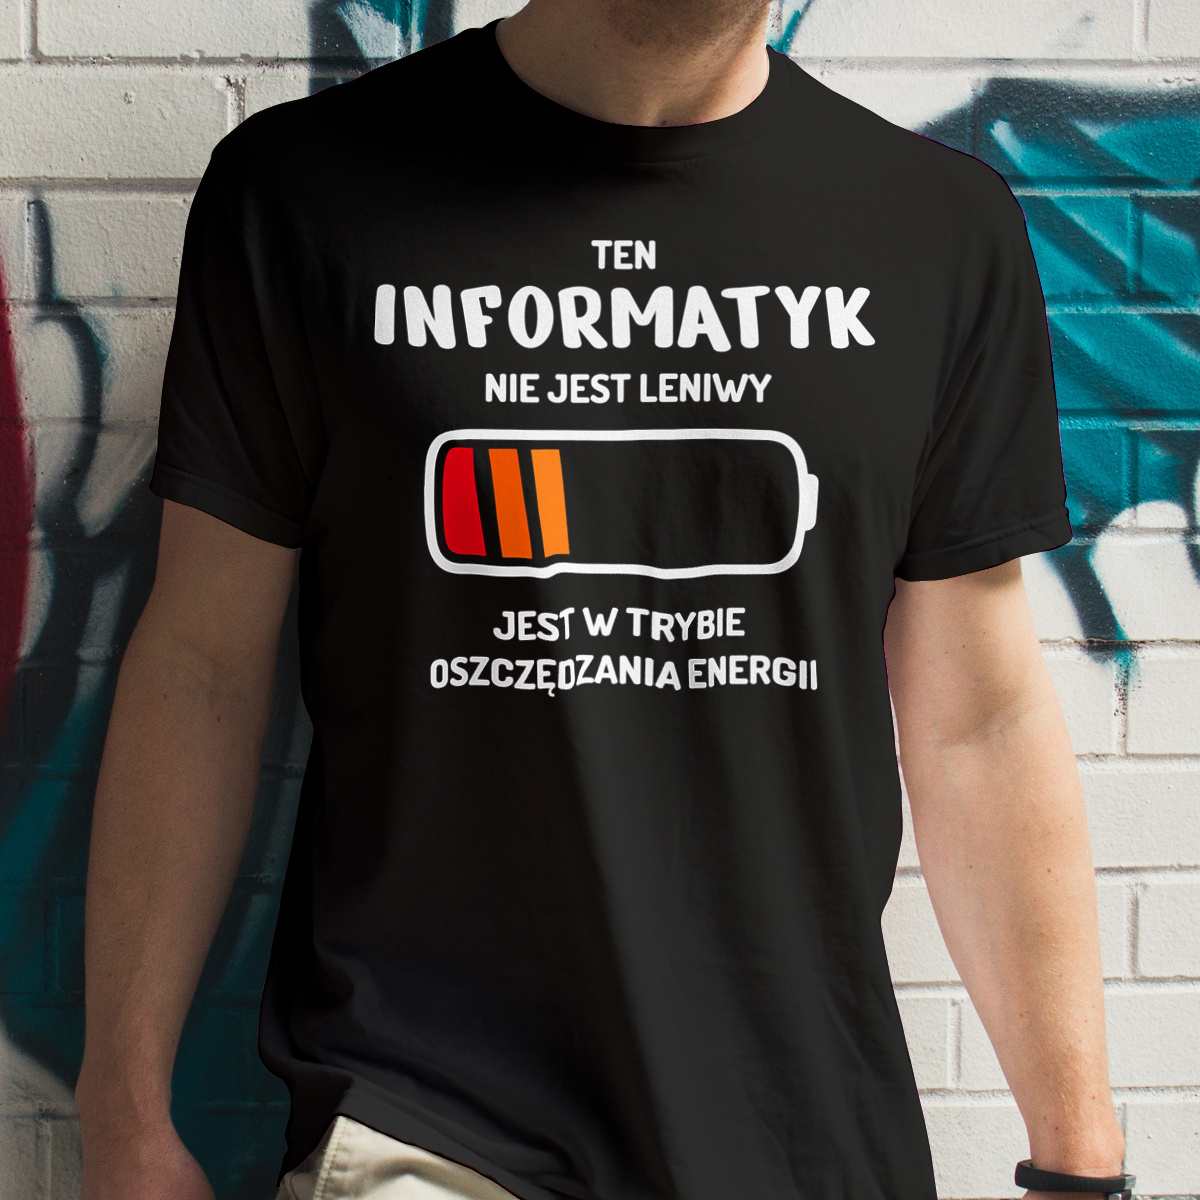 Nie Leniwy Informatyk - Męska Koszulka Czarna